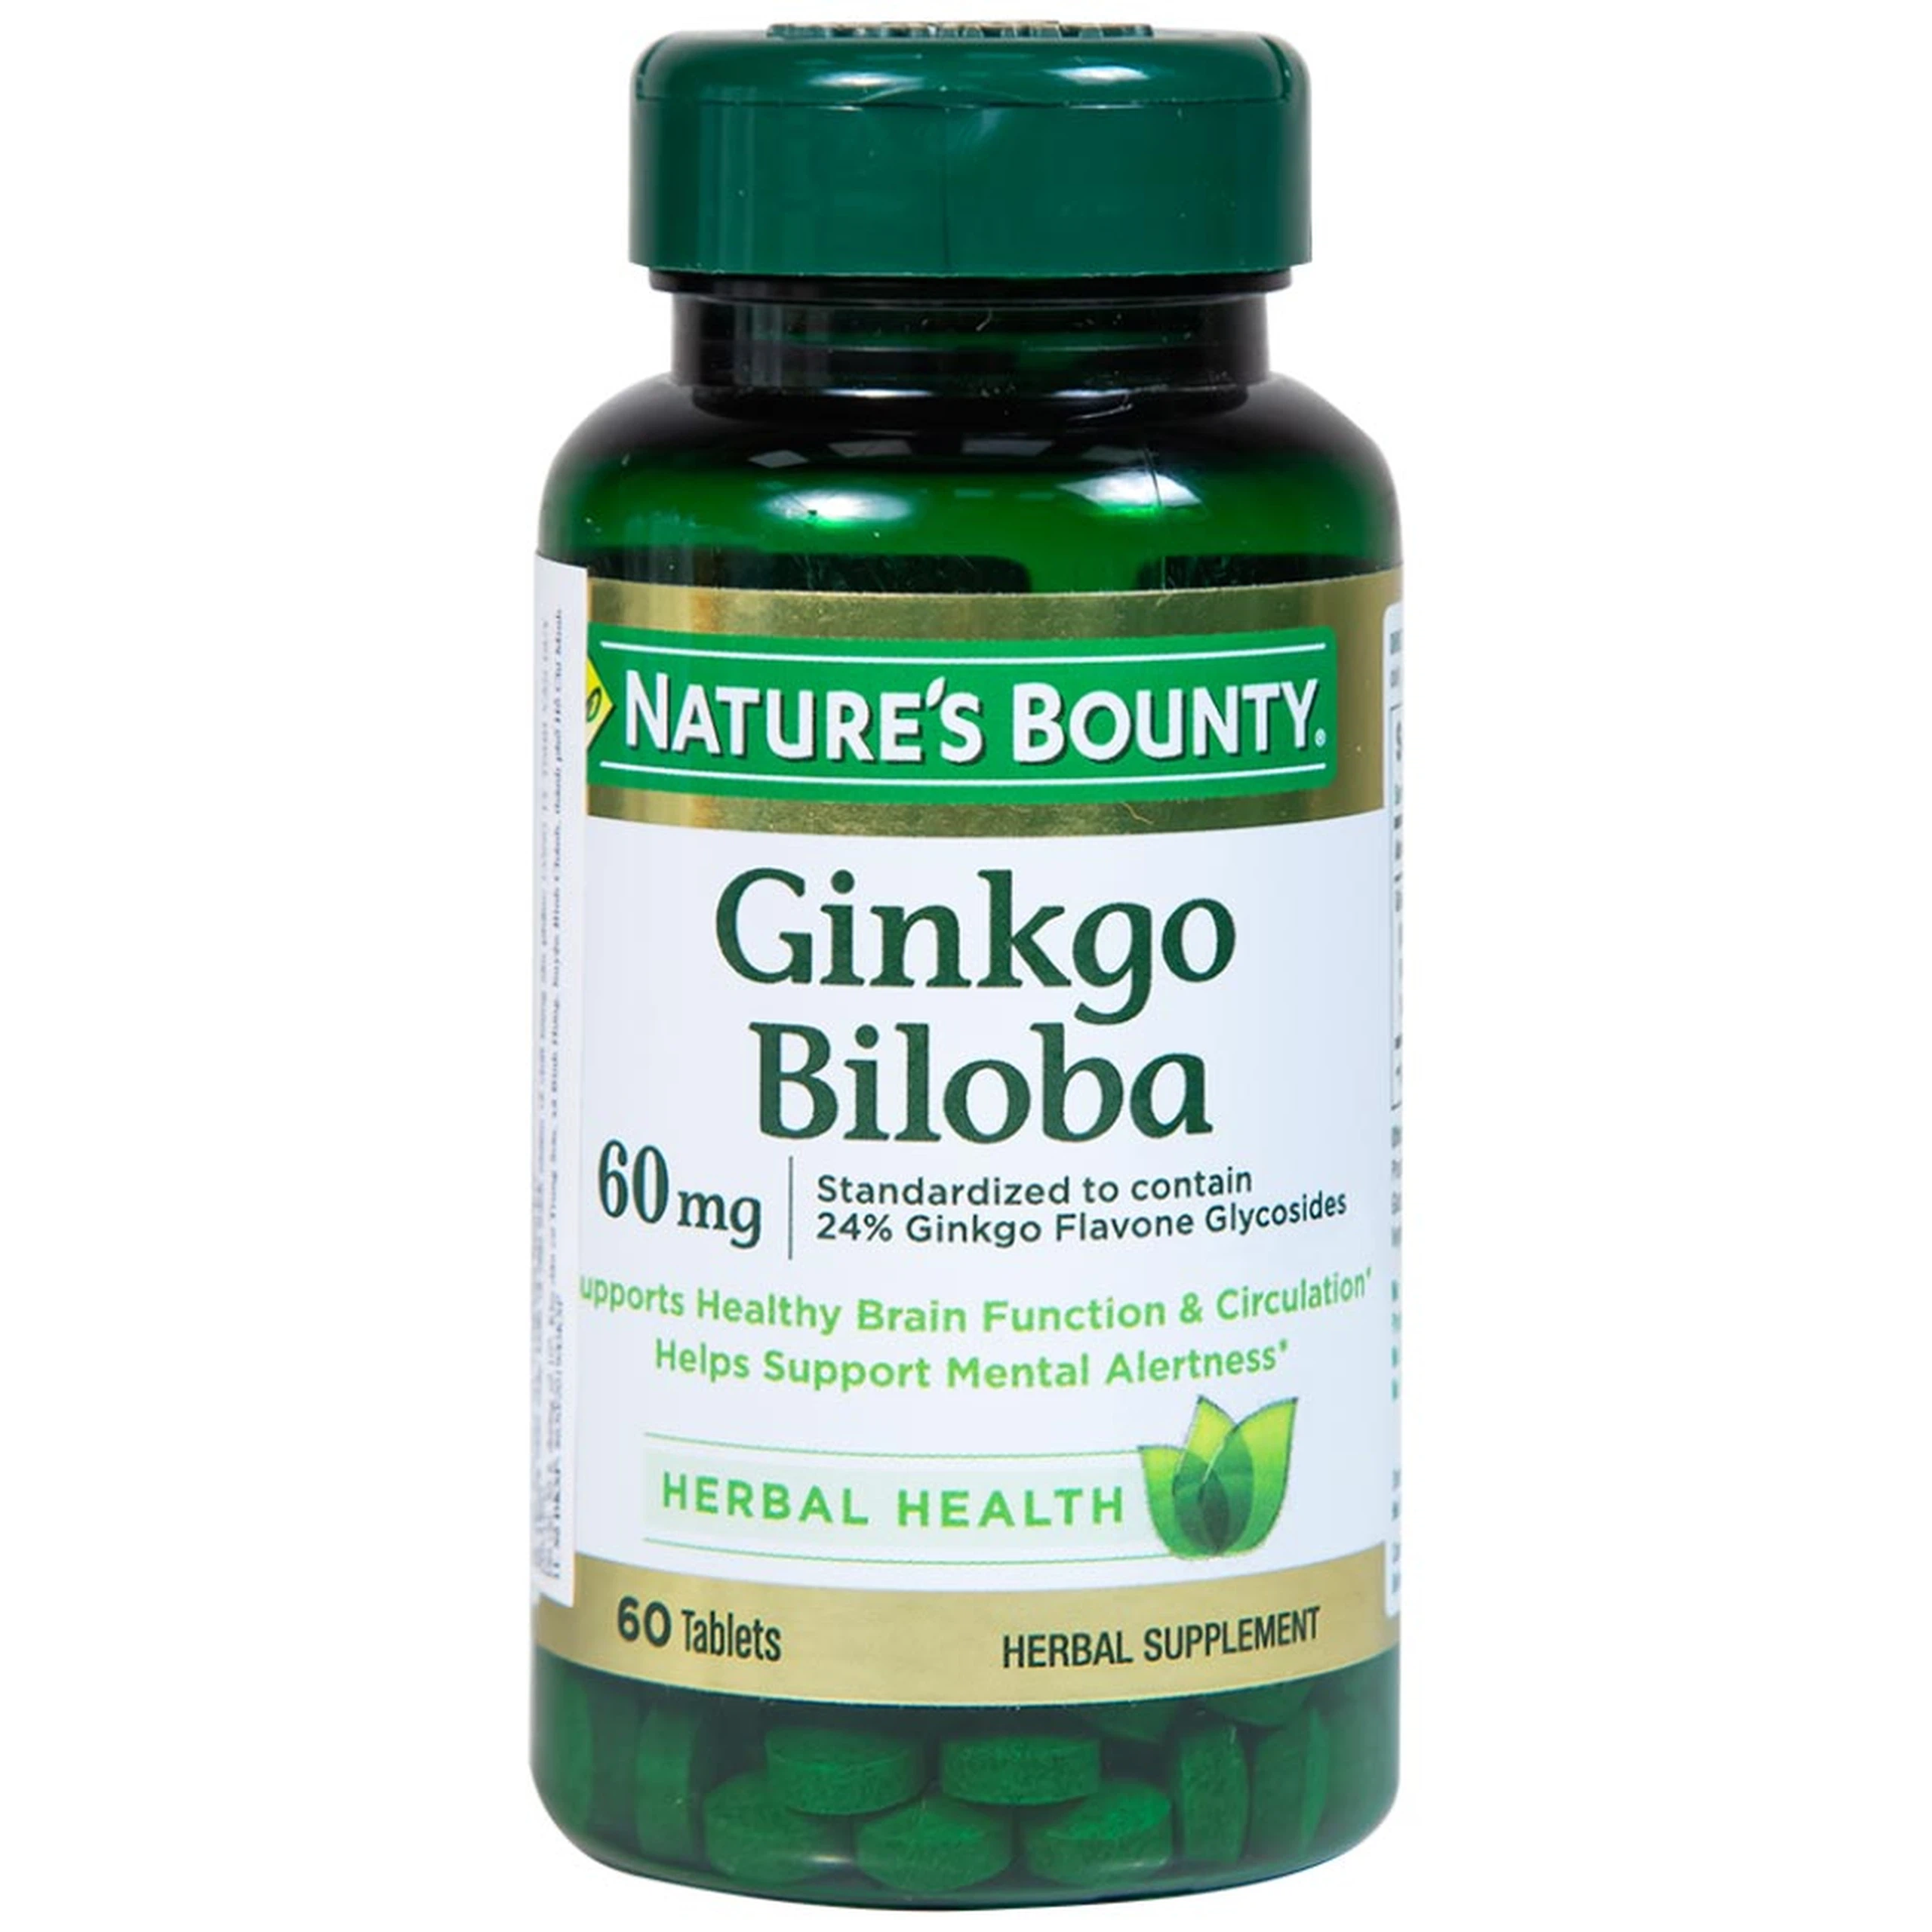 Viên uống Ginkgo Biloba 60mg Nature's Bounty hỗ trợ tăng cường tuần hoàn não (60 viên)